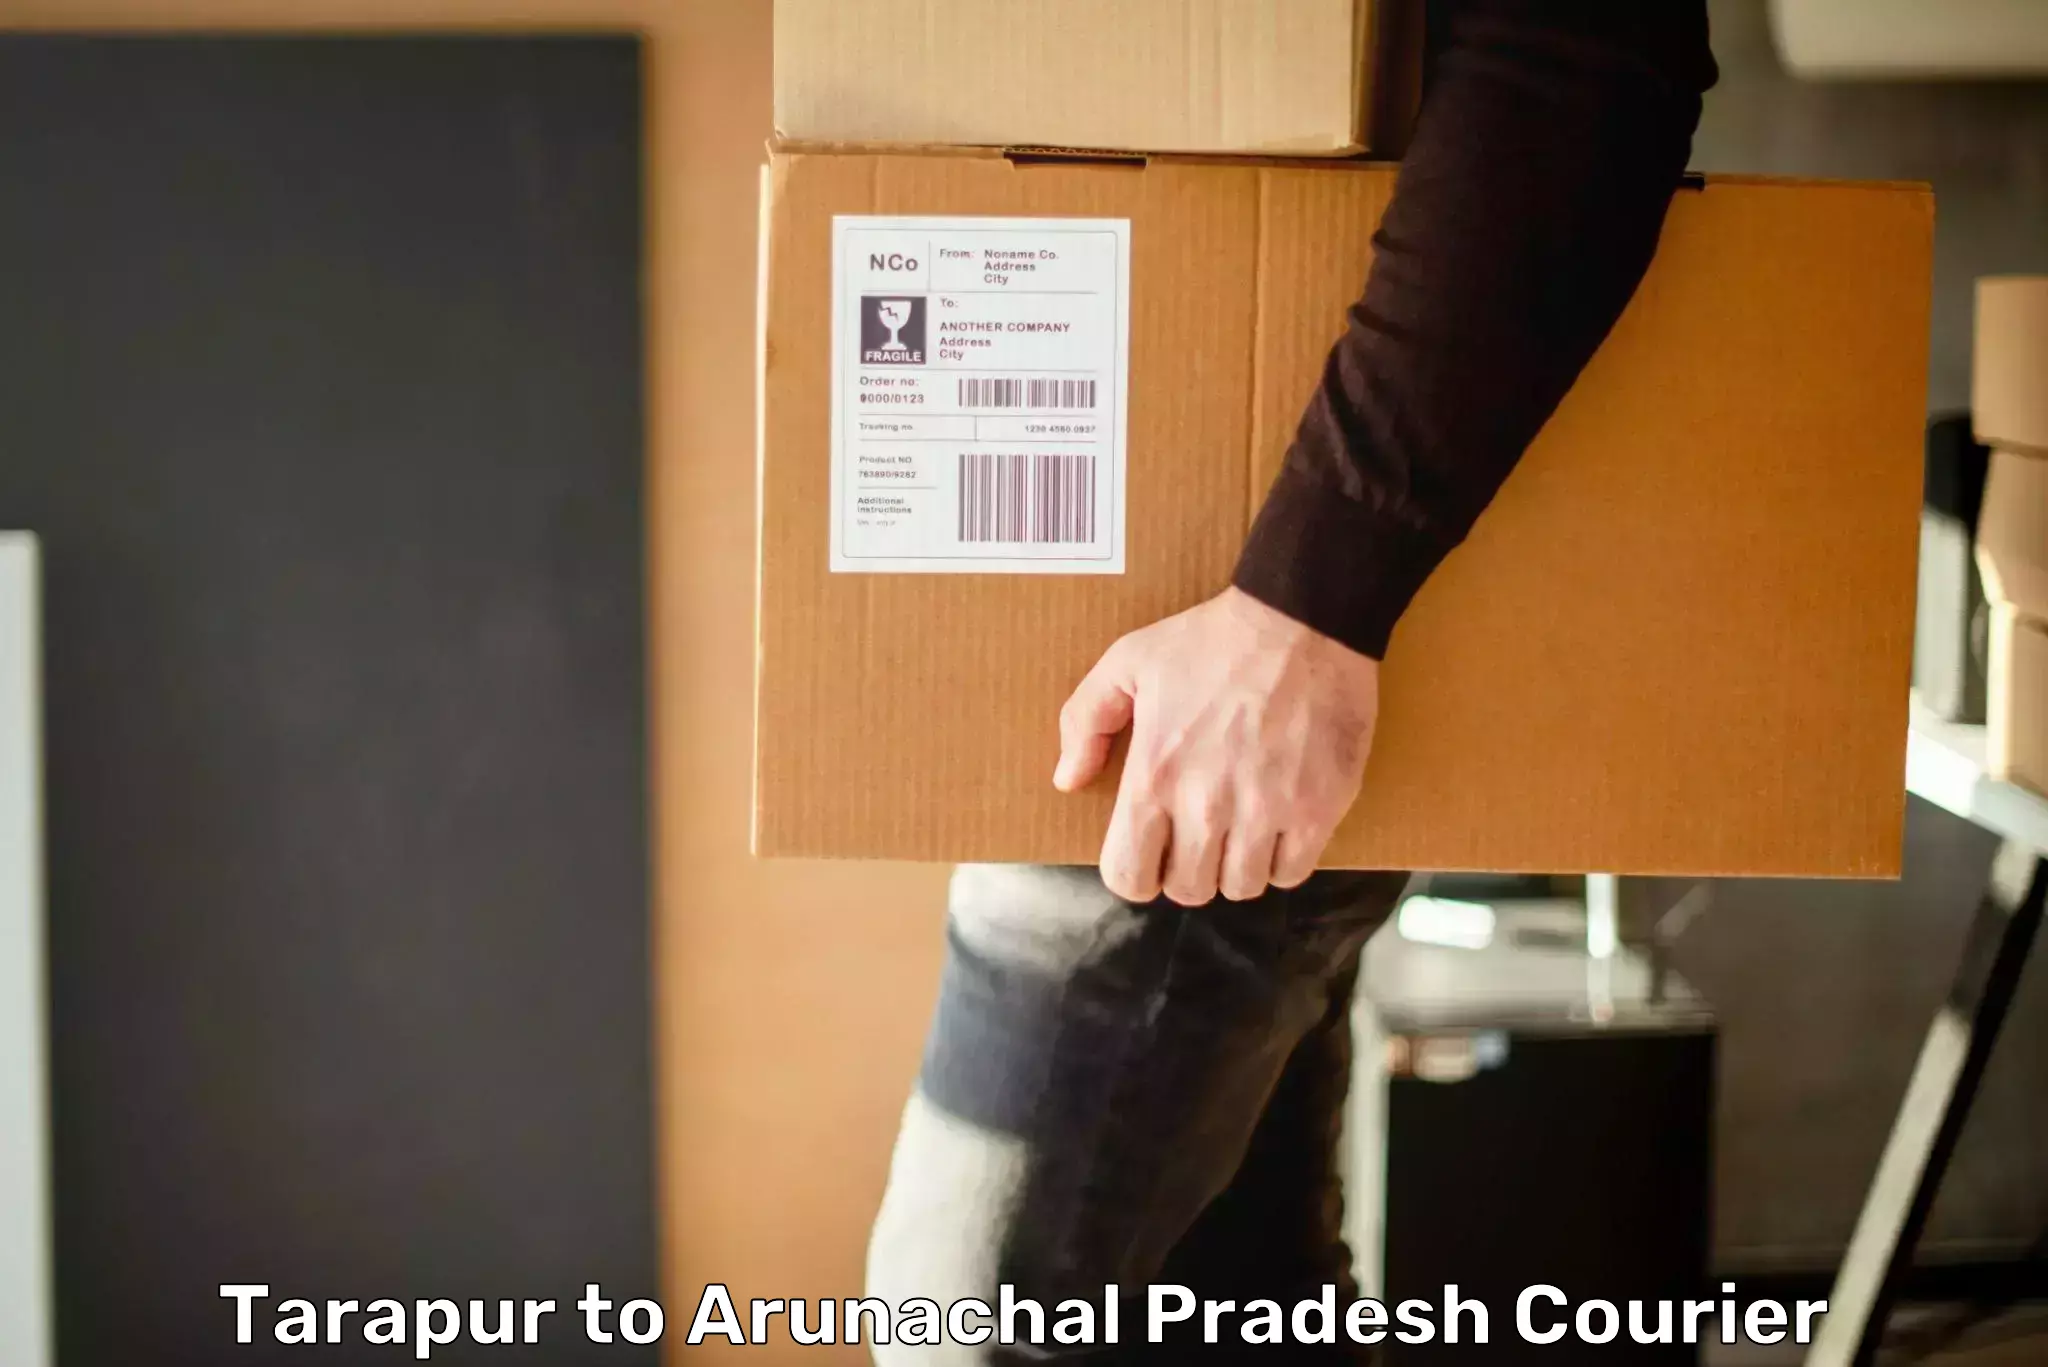 Flexible delivery scheduling Tarapur to Arunachal Pradesh